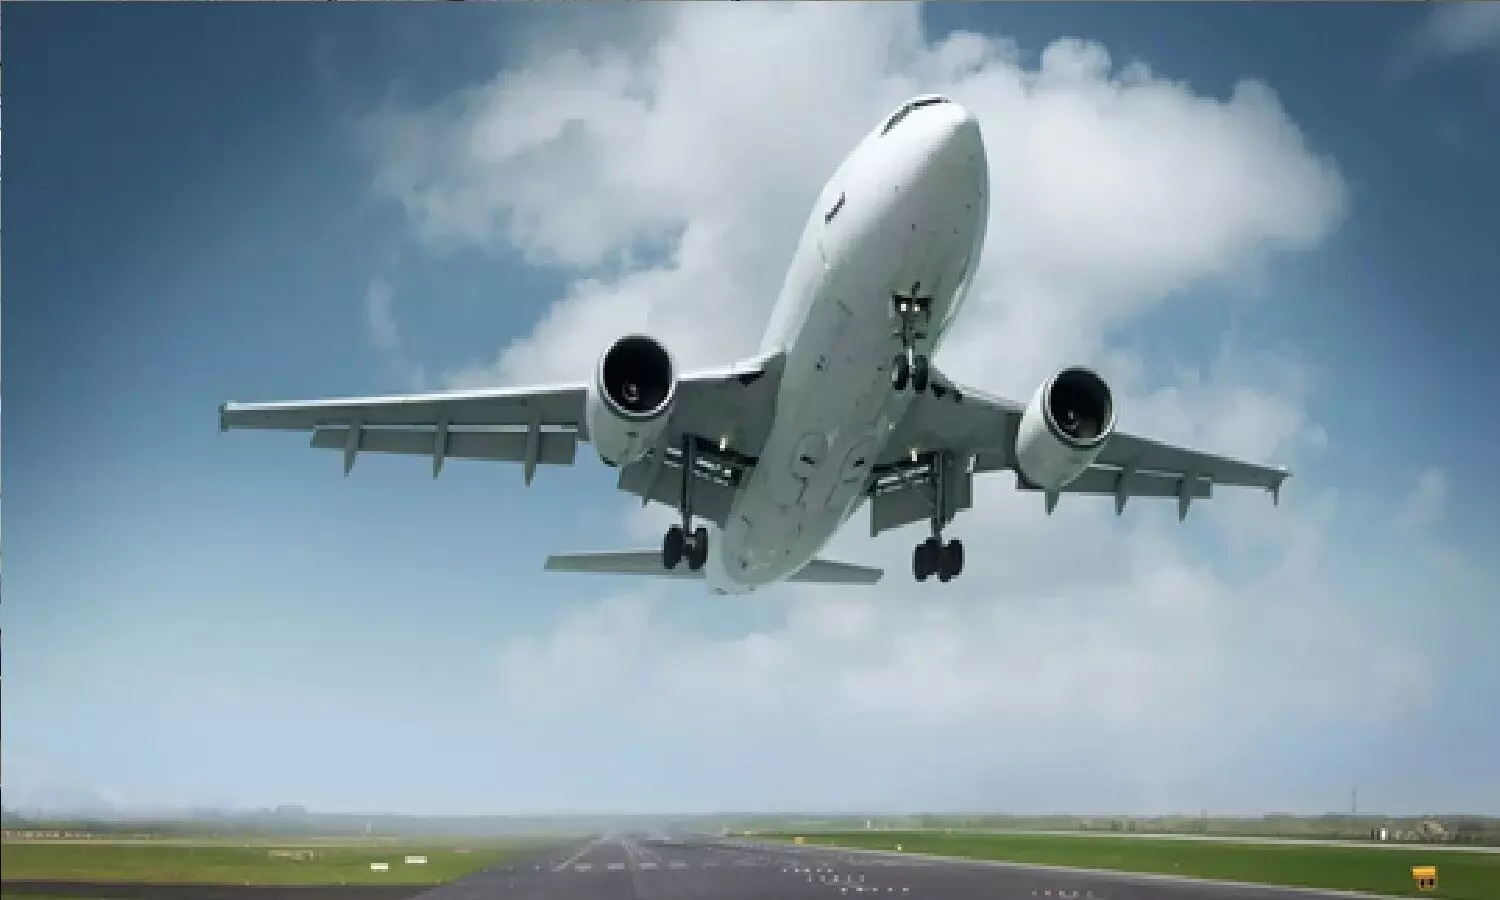 दुनिया की सबसे छोटी हवाई यात्रा: एक मिनट से भी कम वक़्त में यात्री मंजिल तक पहुंच जाते हैं